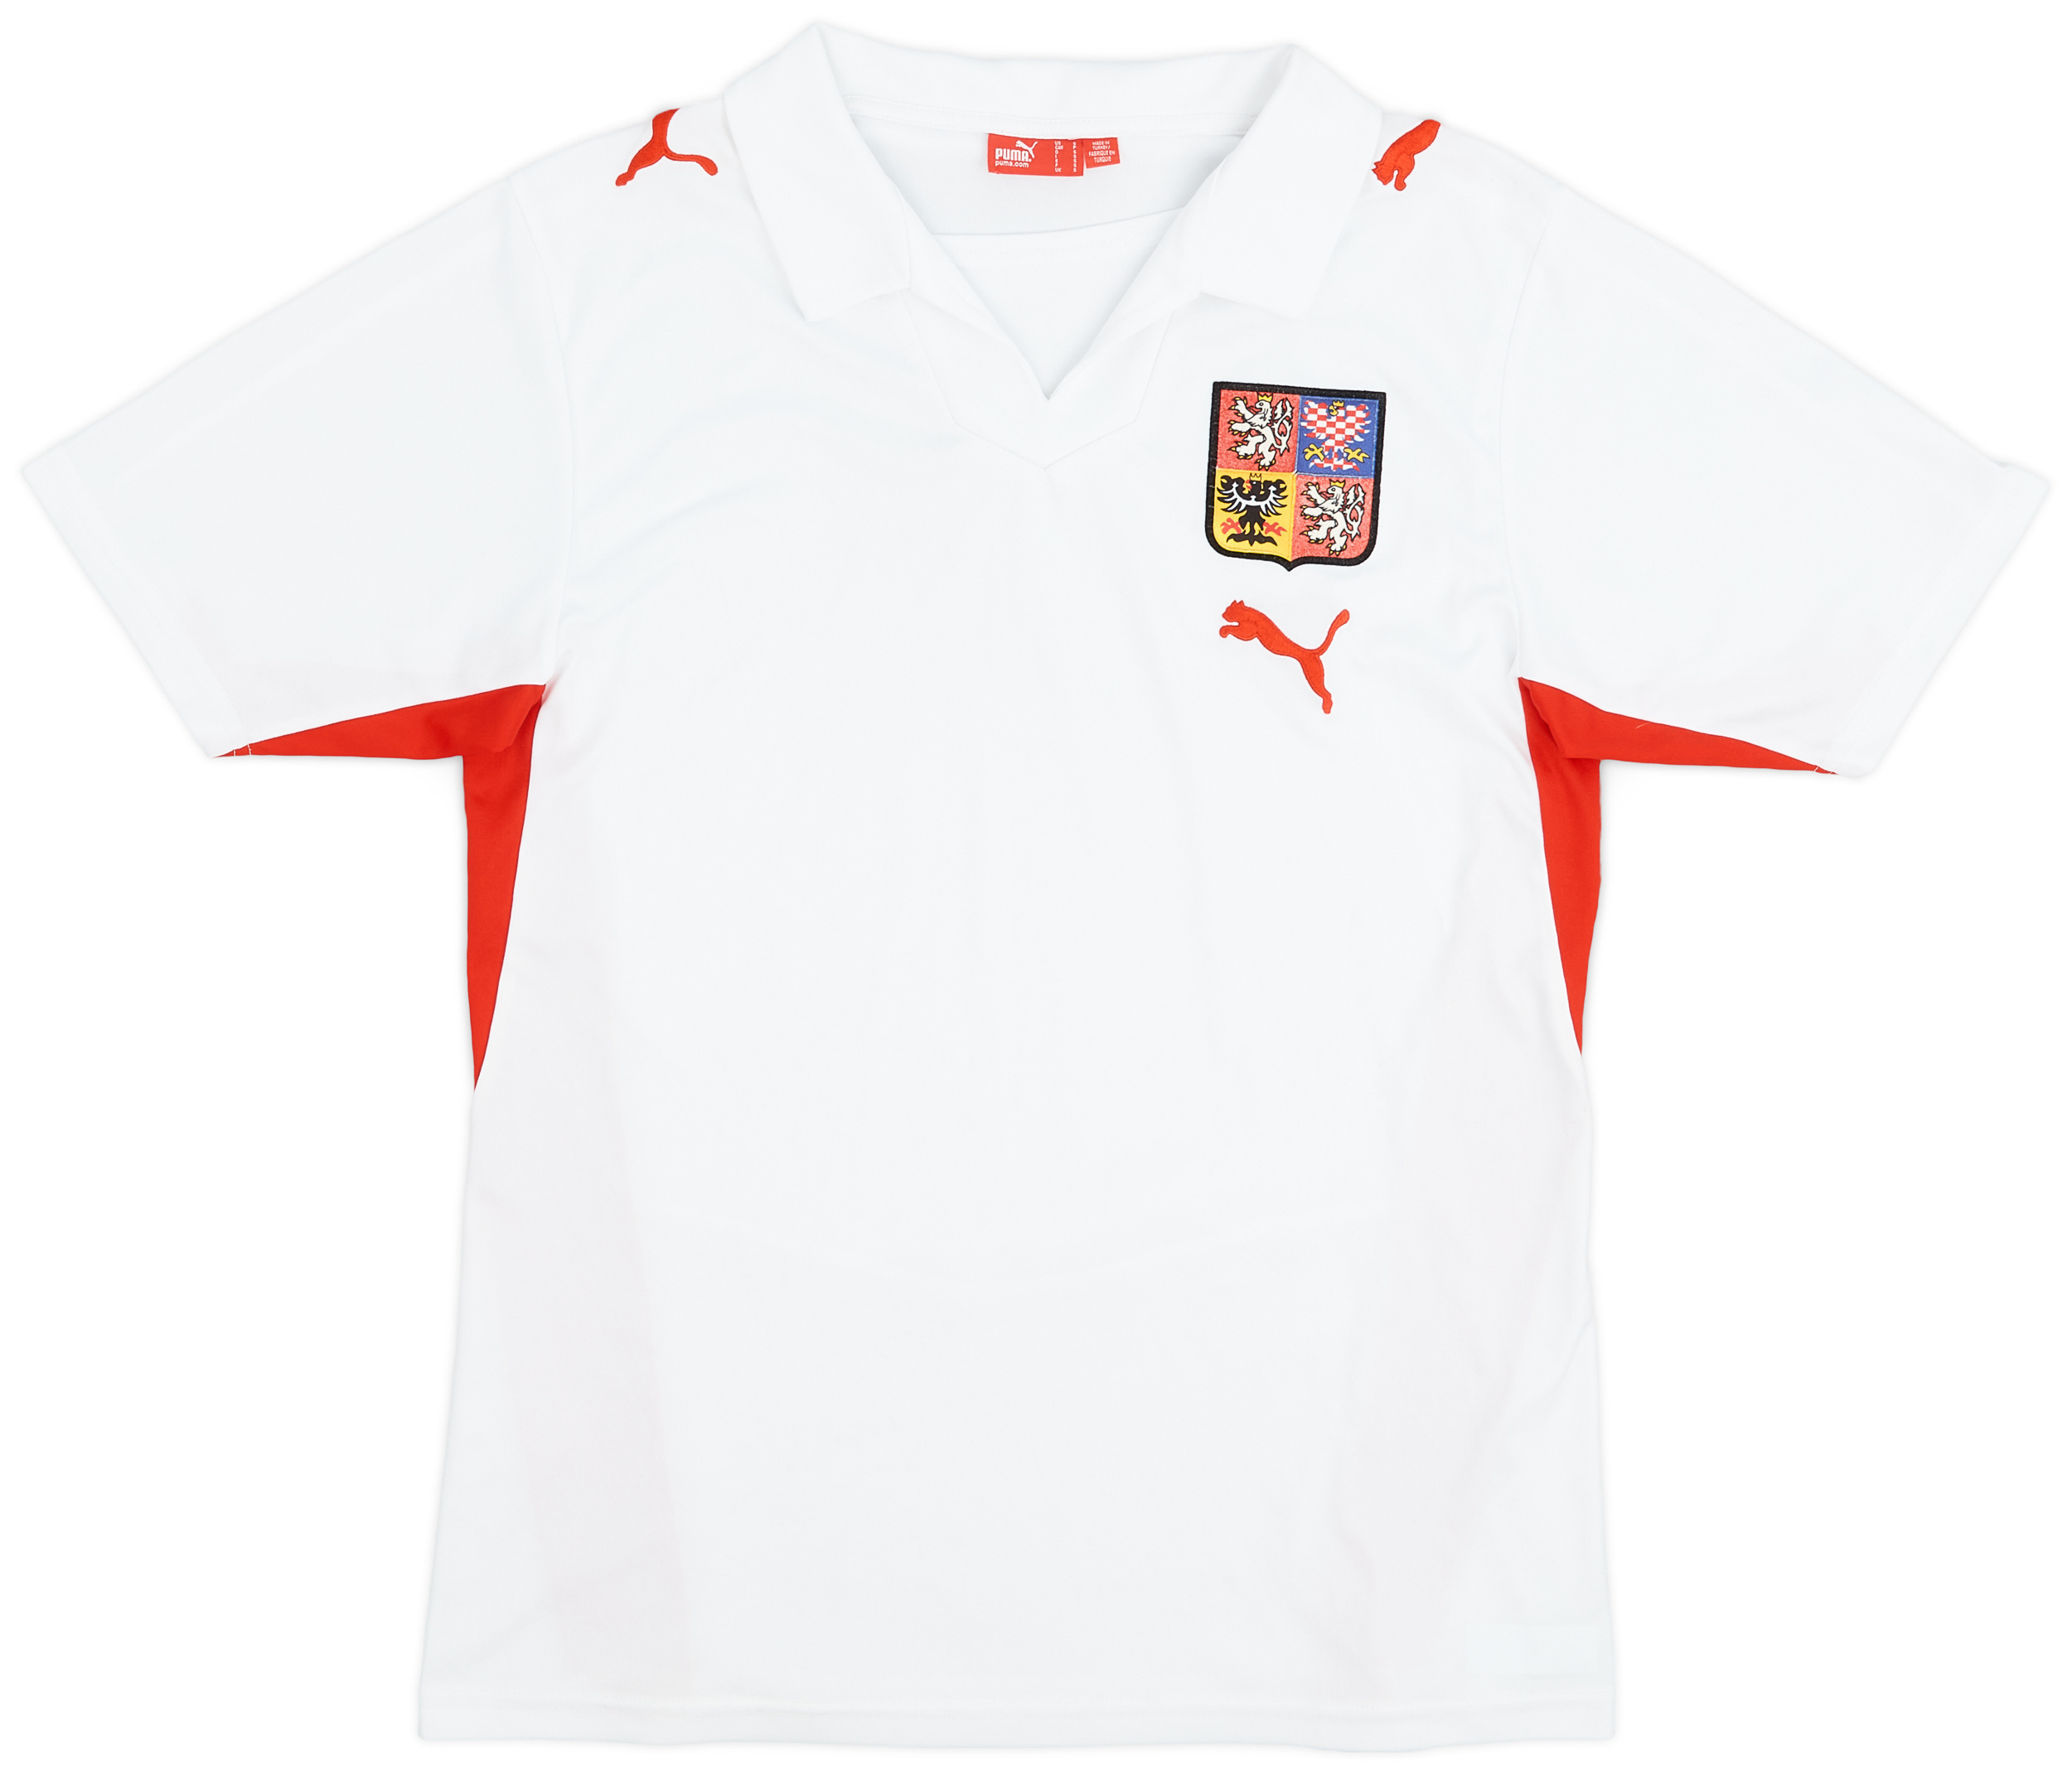 Czech Republic  Away shirt (Original)